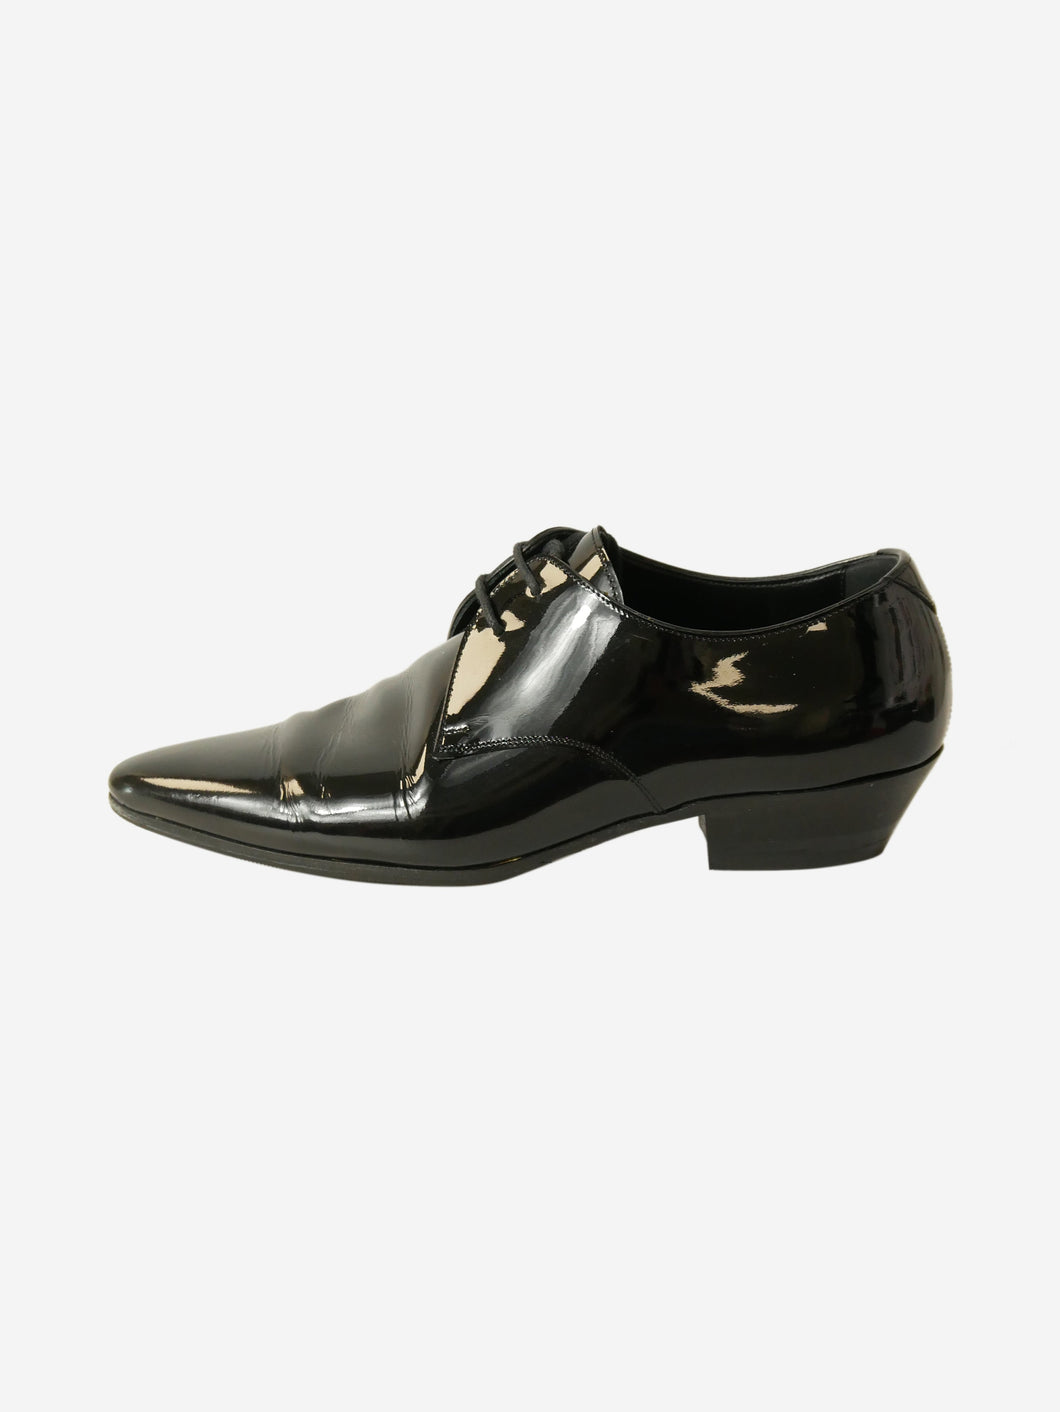 Black leather pointed-toe shoes - size EU 37.5 Flat Shoes Saint Laurent 